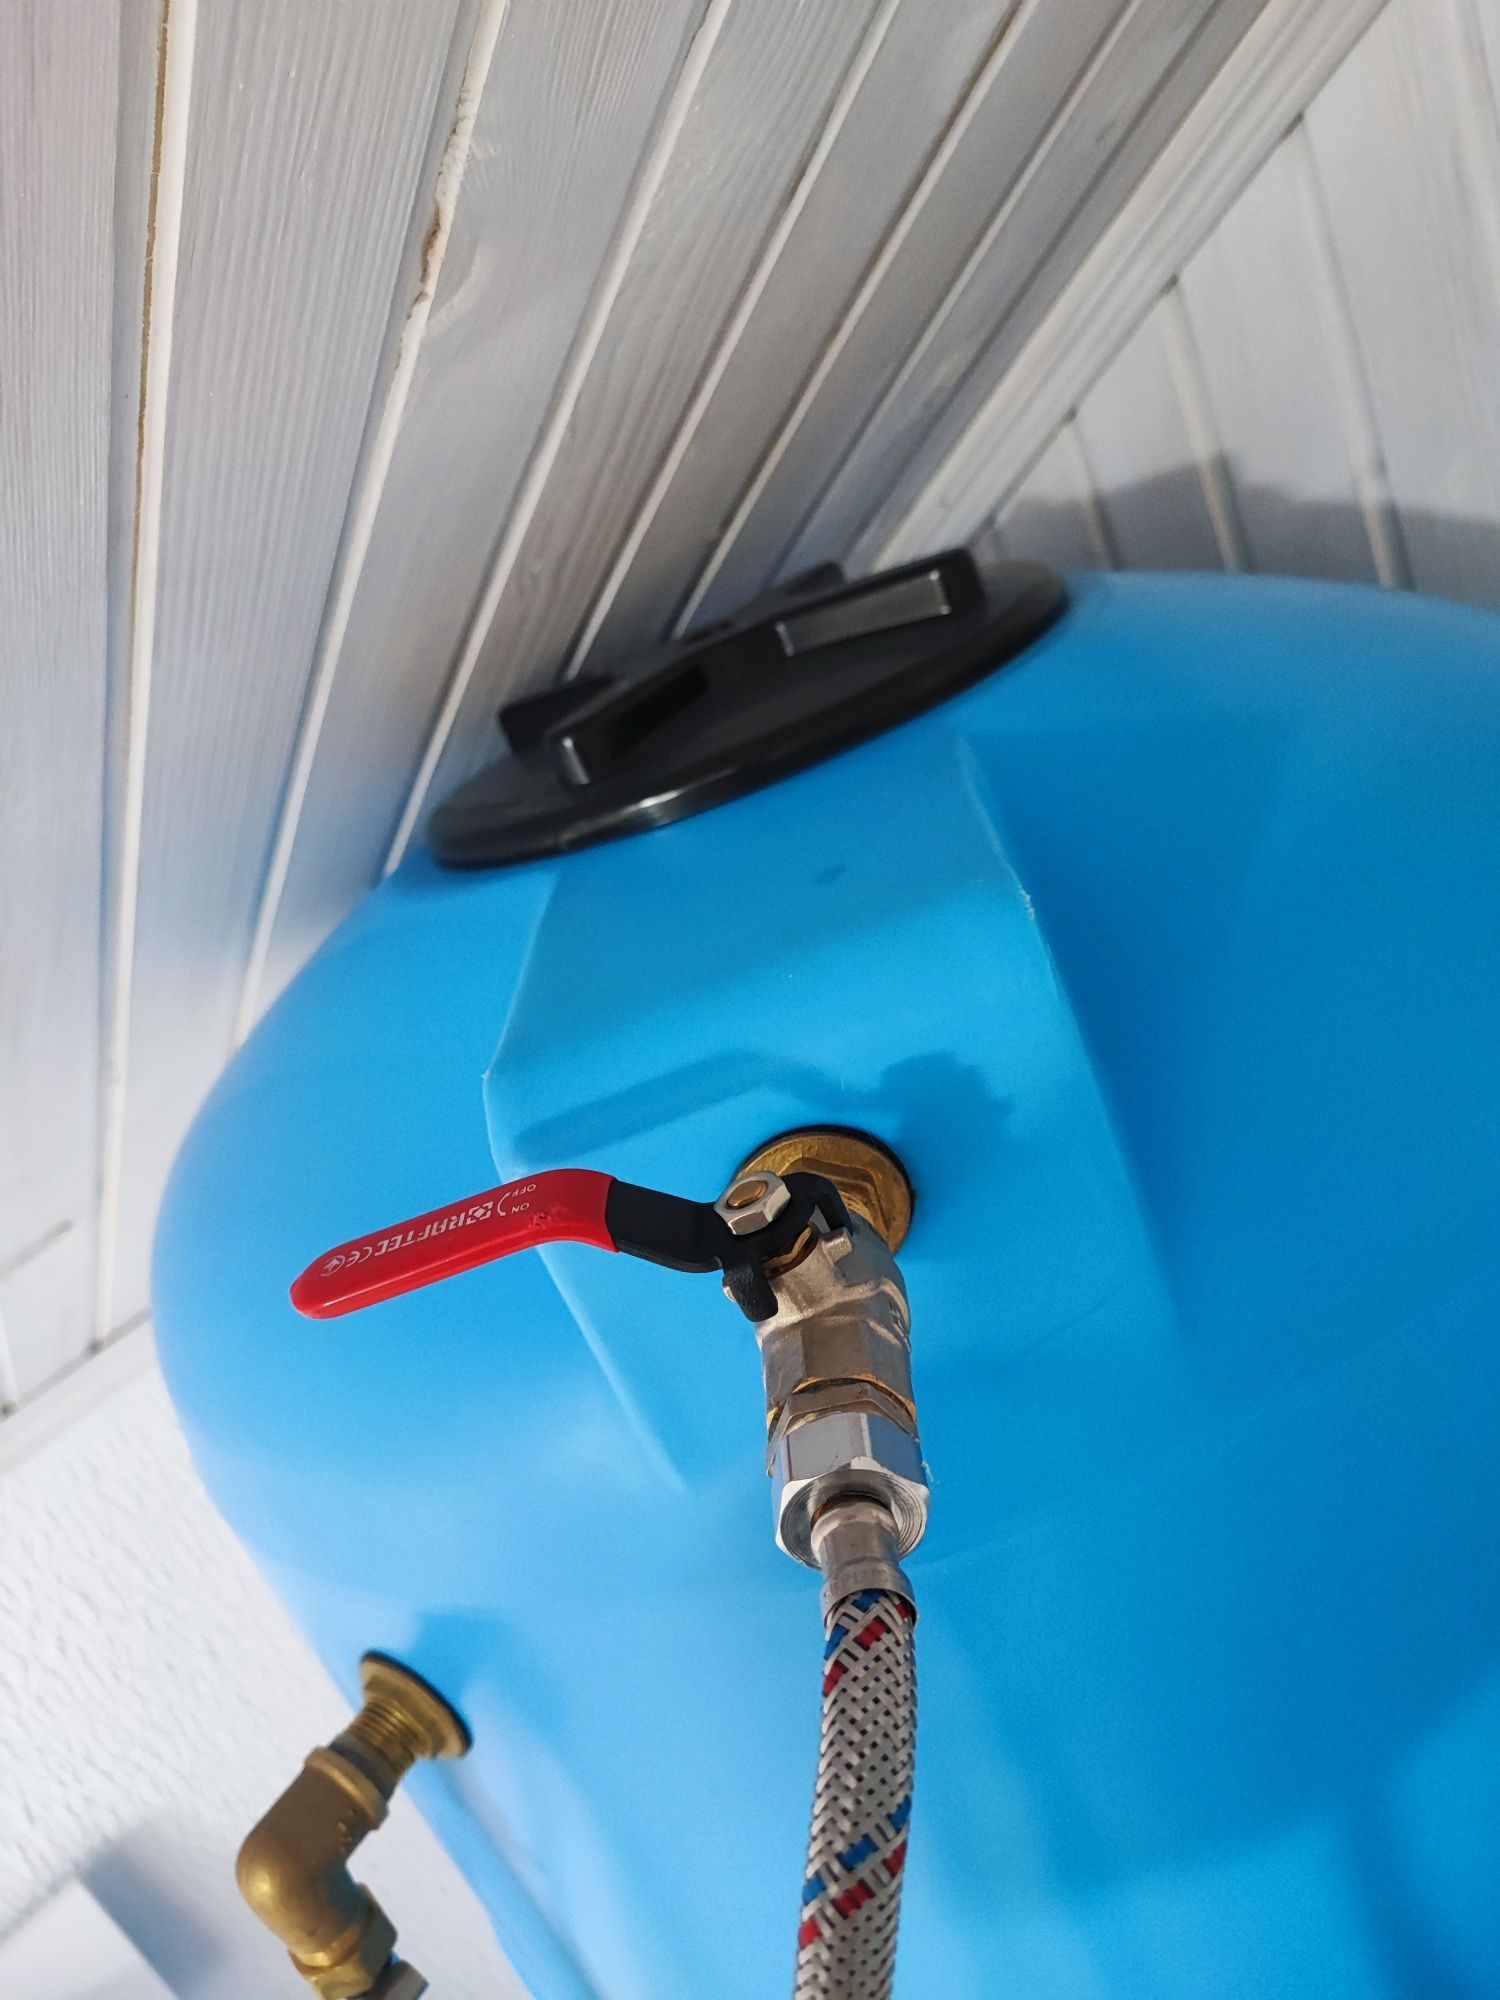 Бочка для воды с насосом и датчиками, система резервного водоснабжения